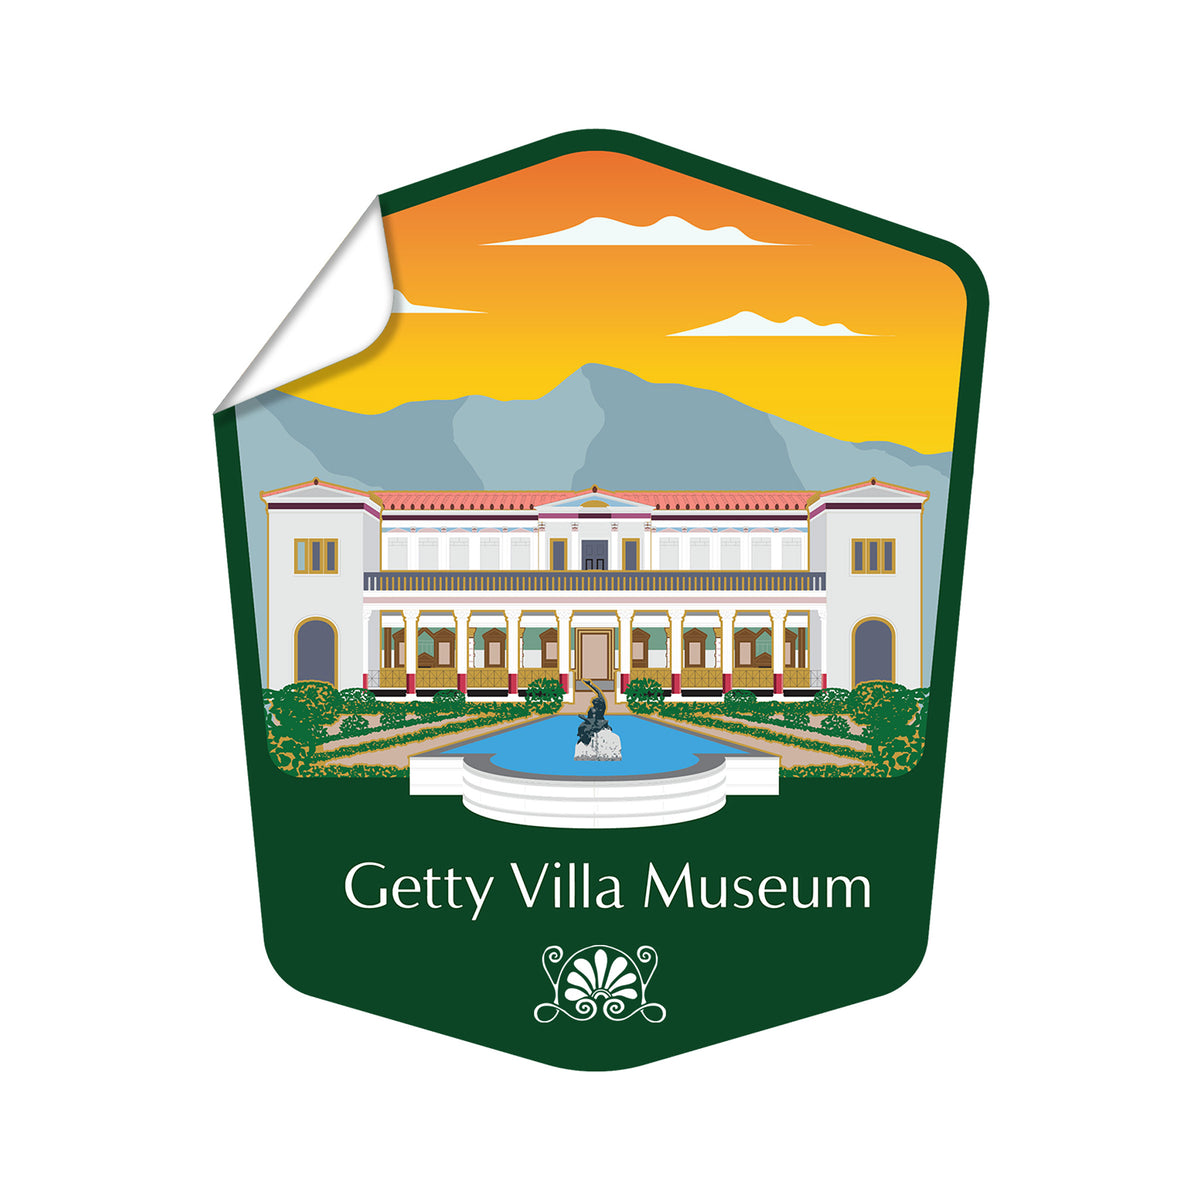 Getty Villa Museum Die Cut Sticker